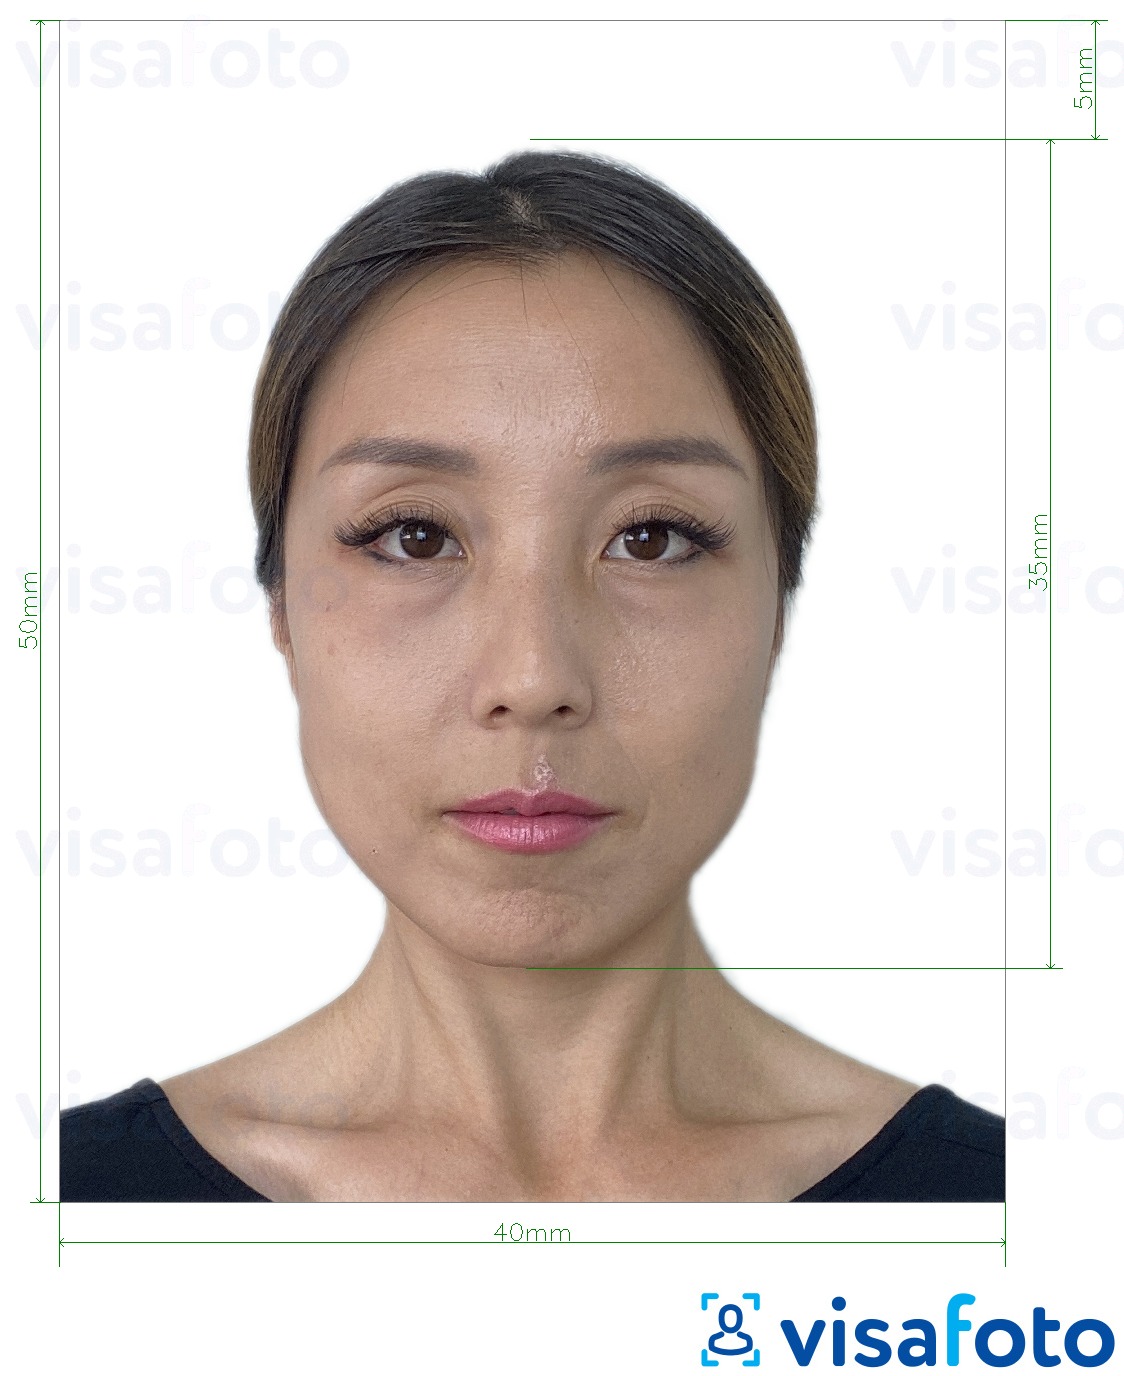 Fotobeispiel für Hongkong Visum 40x50 mm (4x5 cm) mit genauer größenangabe